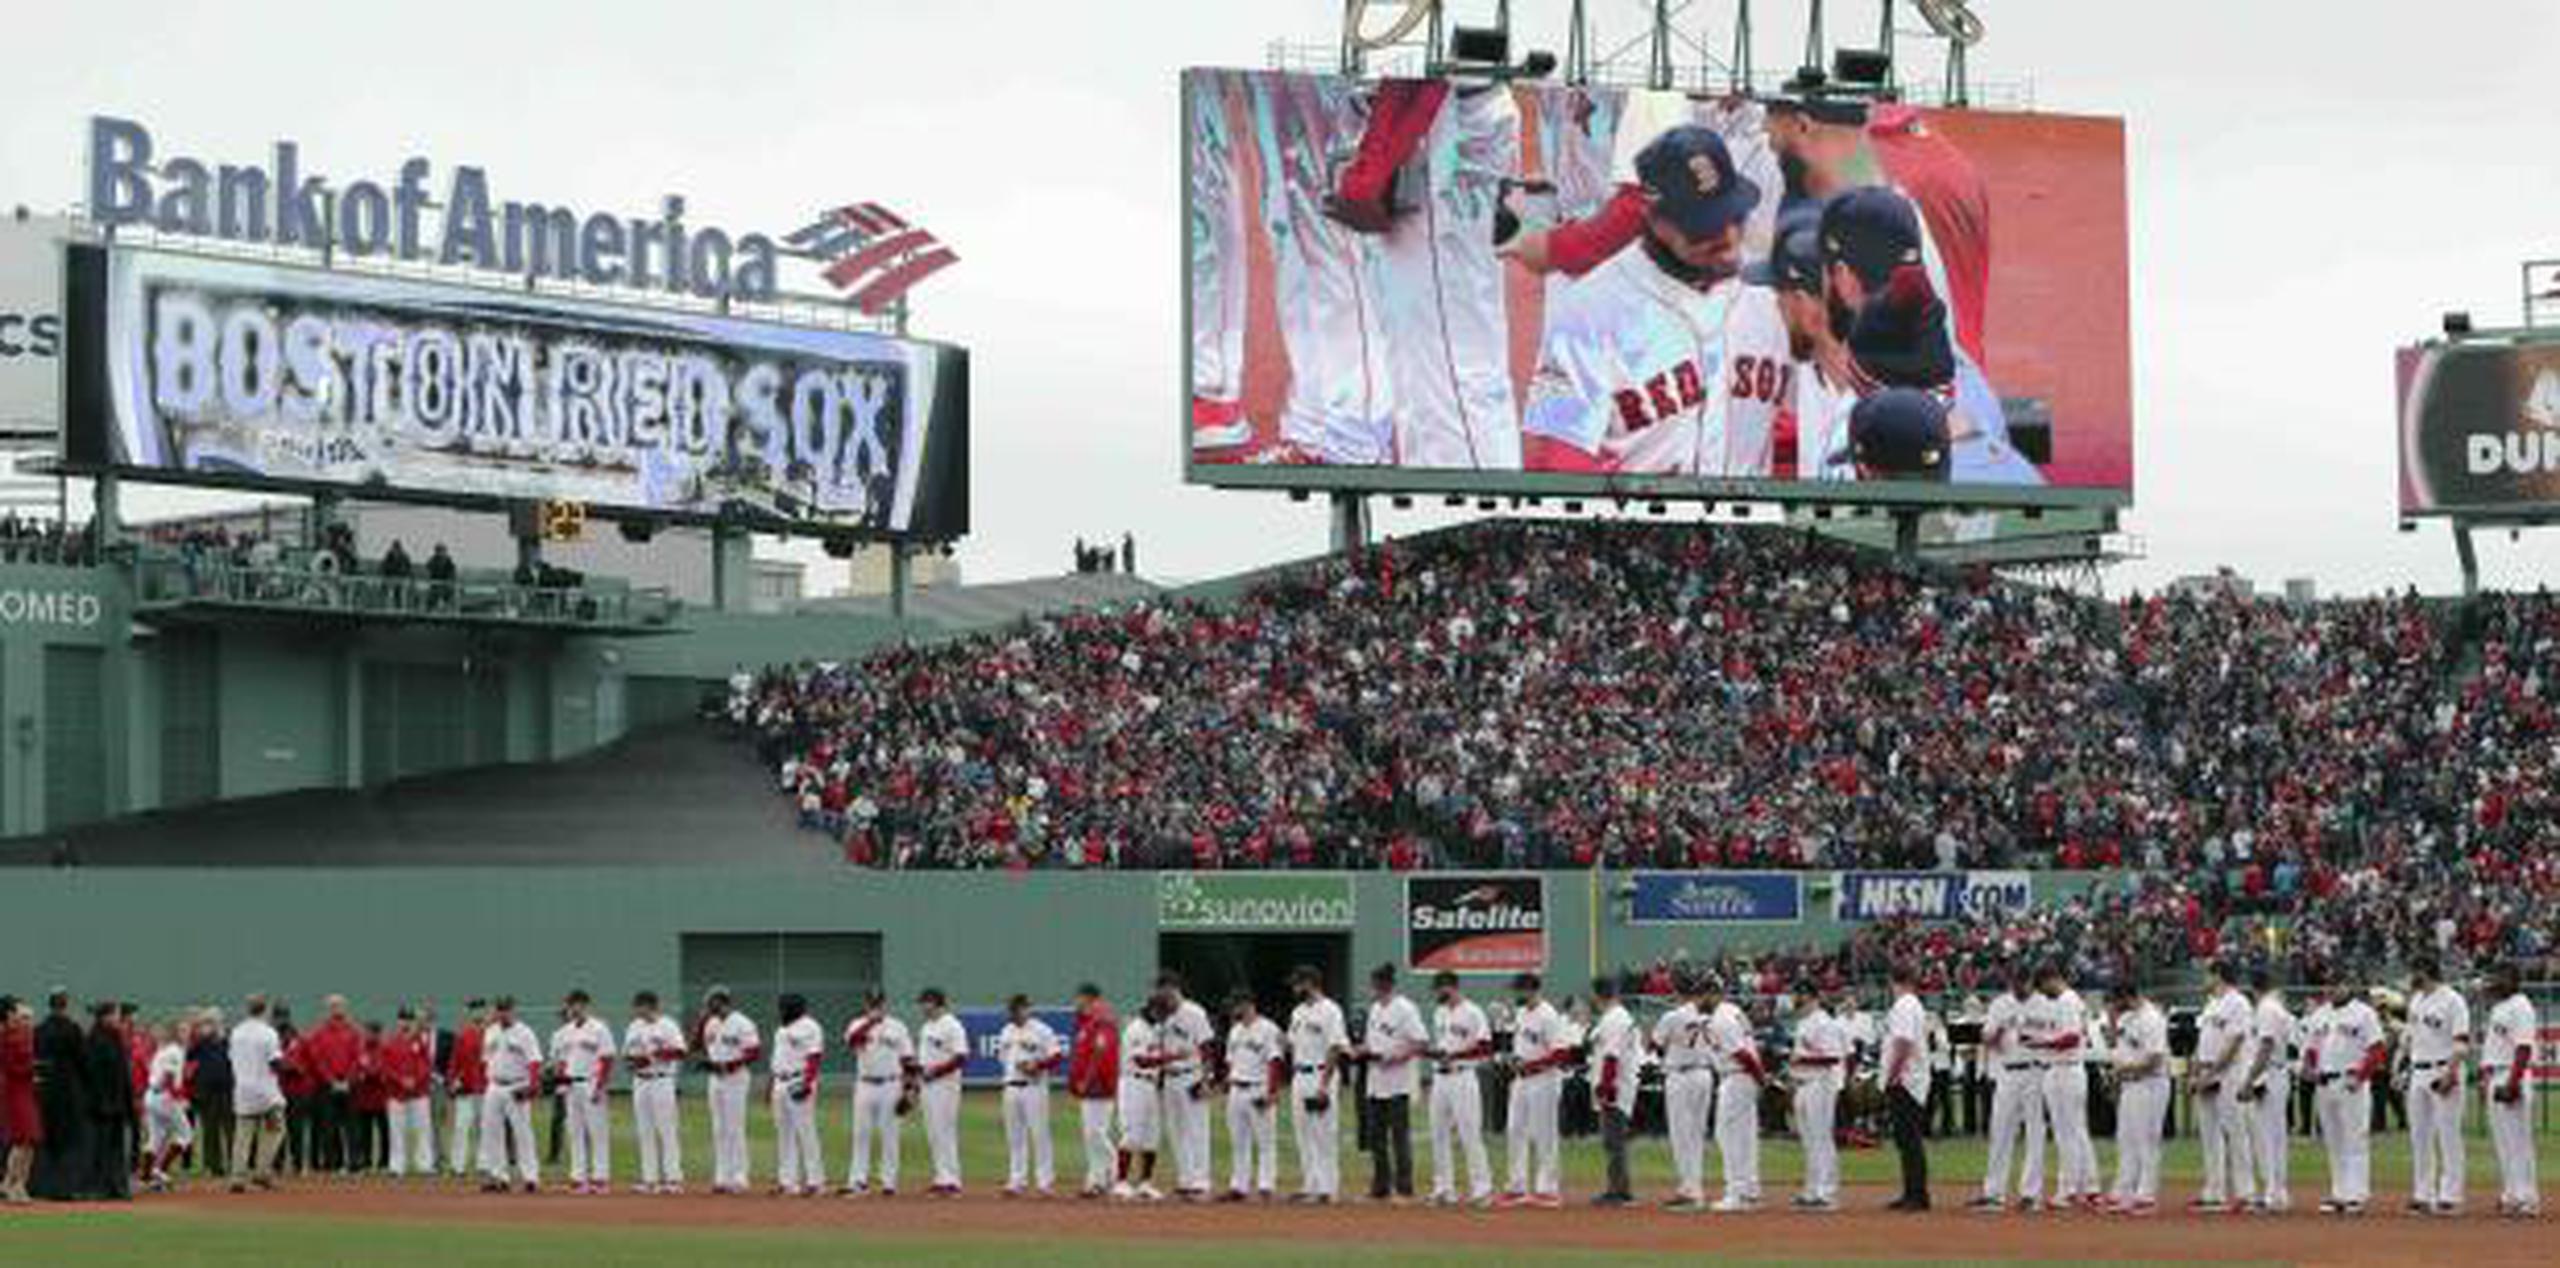 Mookie Betts, de los Red Sox, aparece en la pantalla mientras se une a sus compañeros durante la ceremonia para recibir sus anillos de campeones. (AP / Charles Krupa)